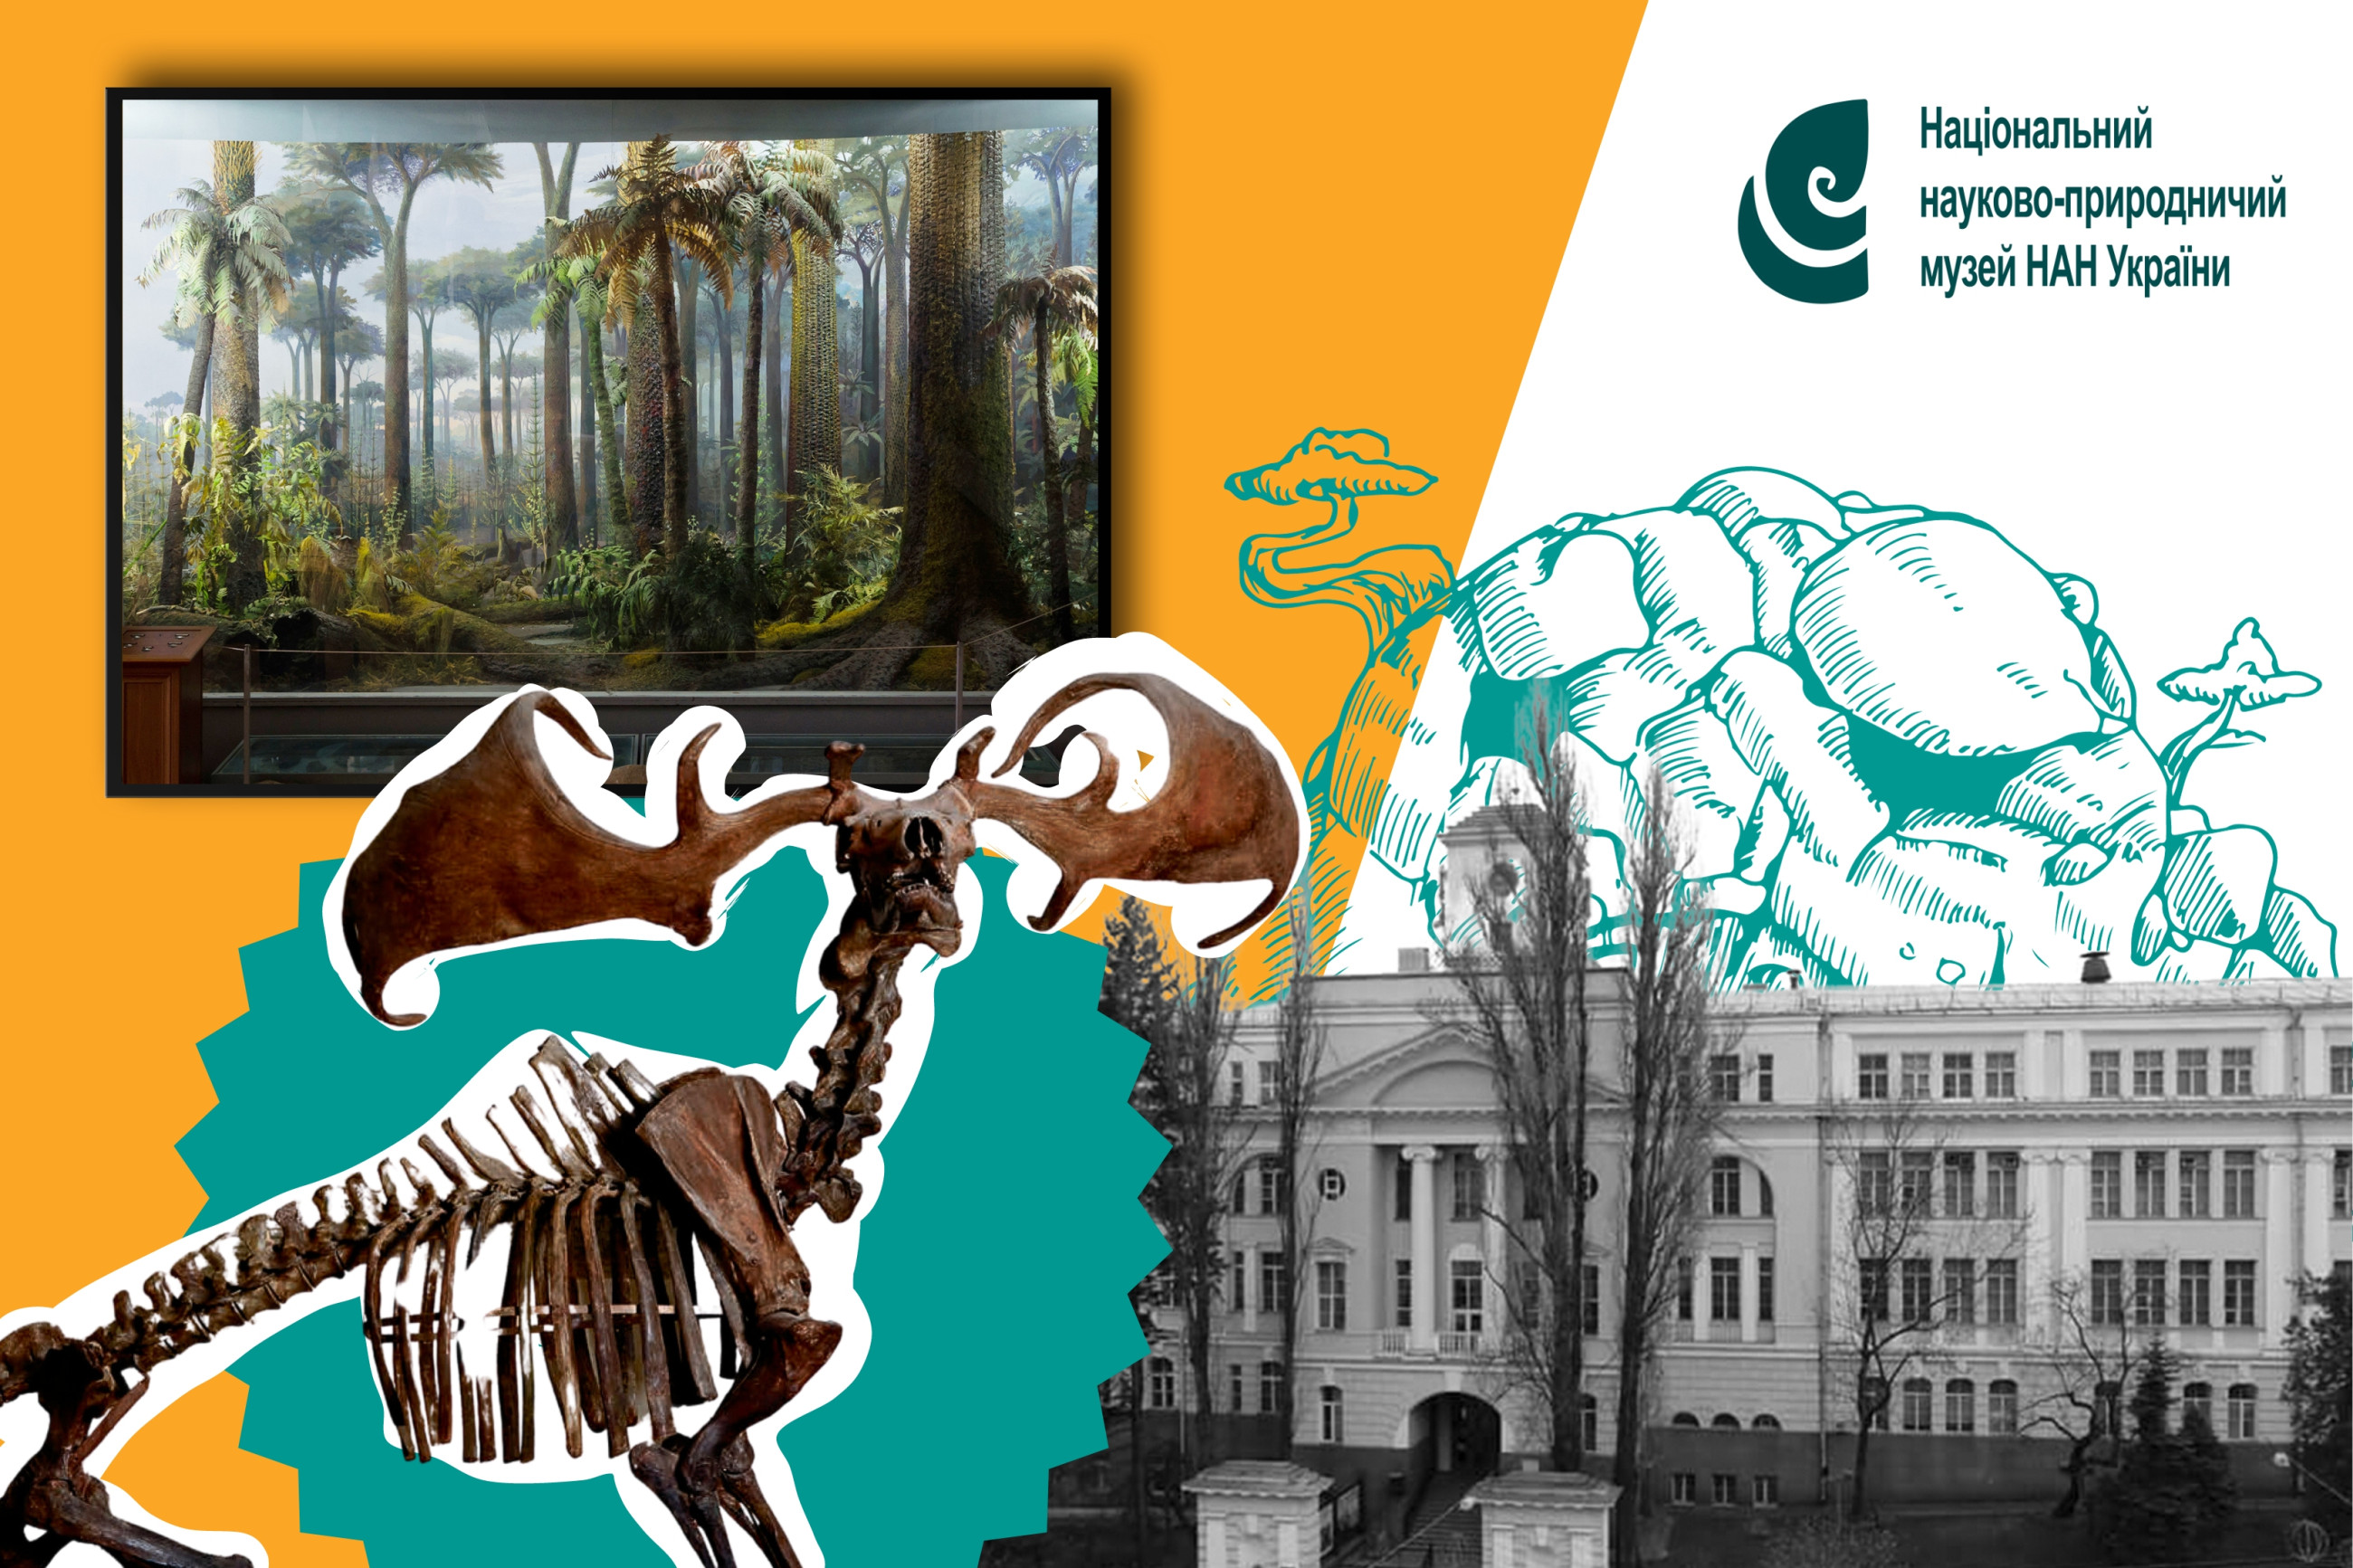 СторіЯ запрошує на прогулянку Природничим музеєм у Києві image